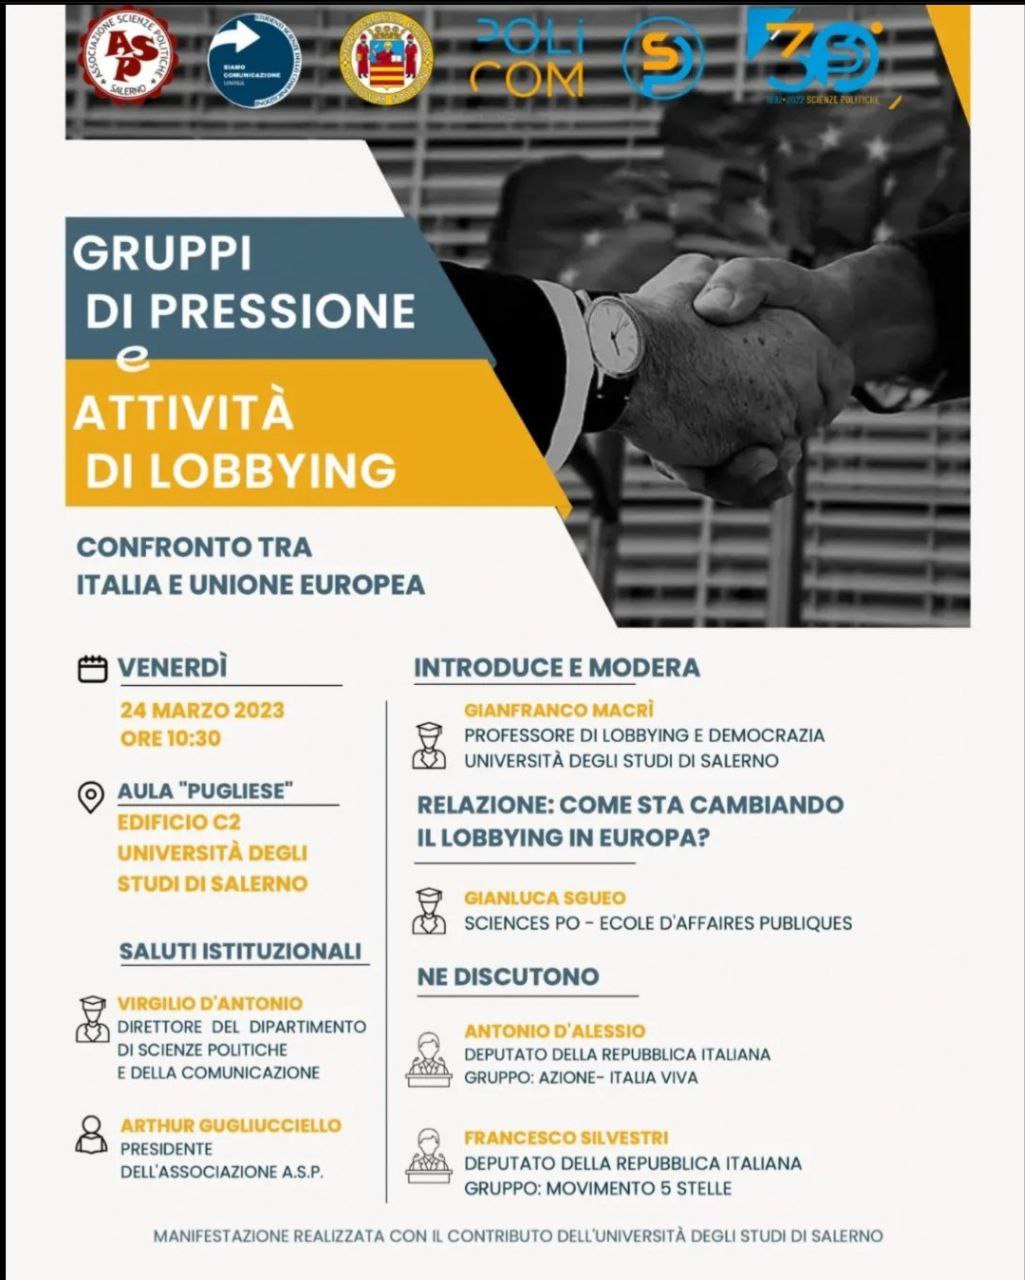 Gruppi di pressione e attività di lobbying: confronto tra Italia e Unione Europea